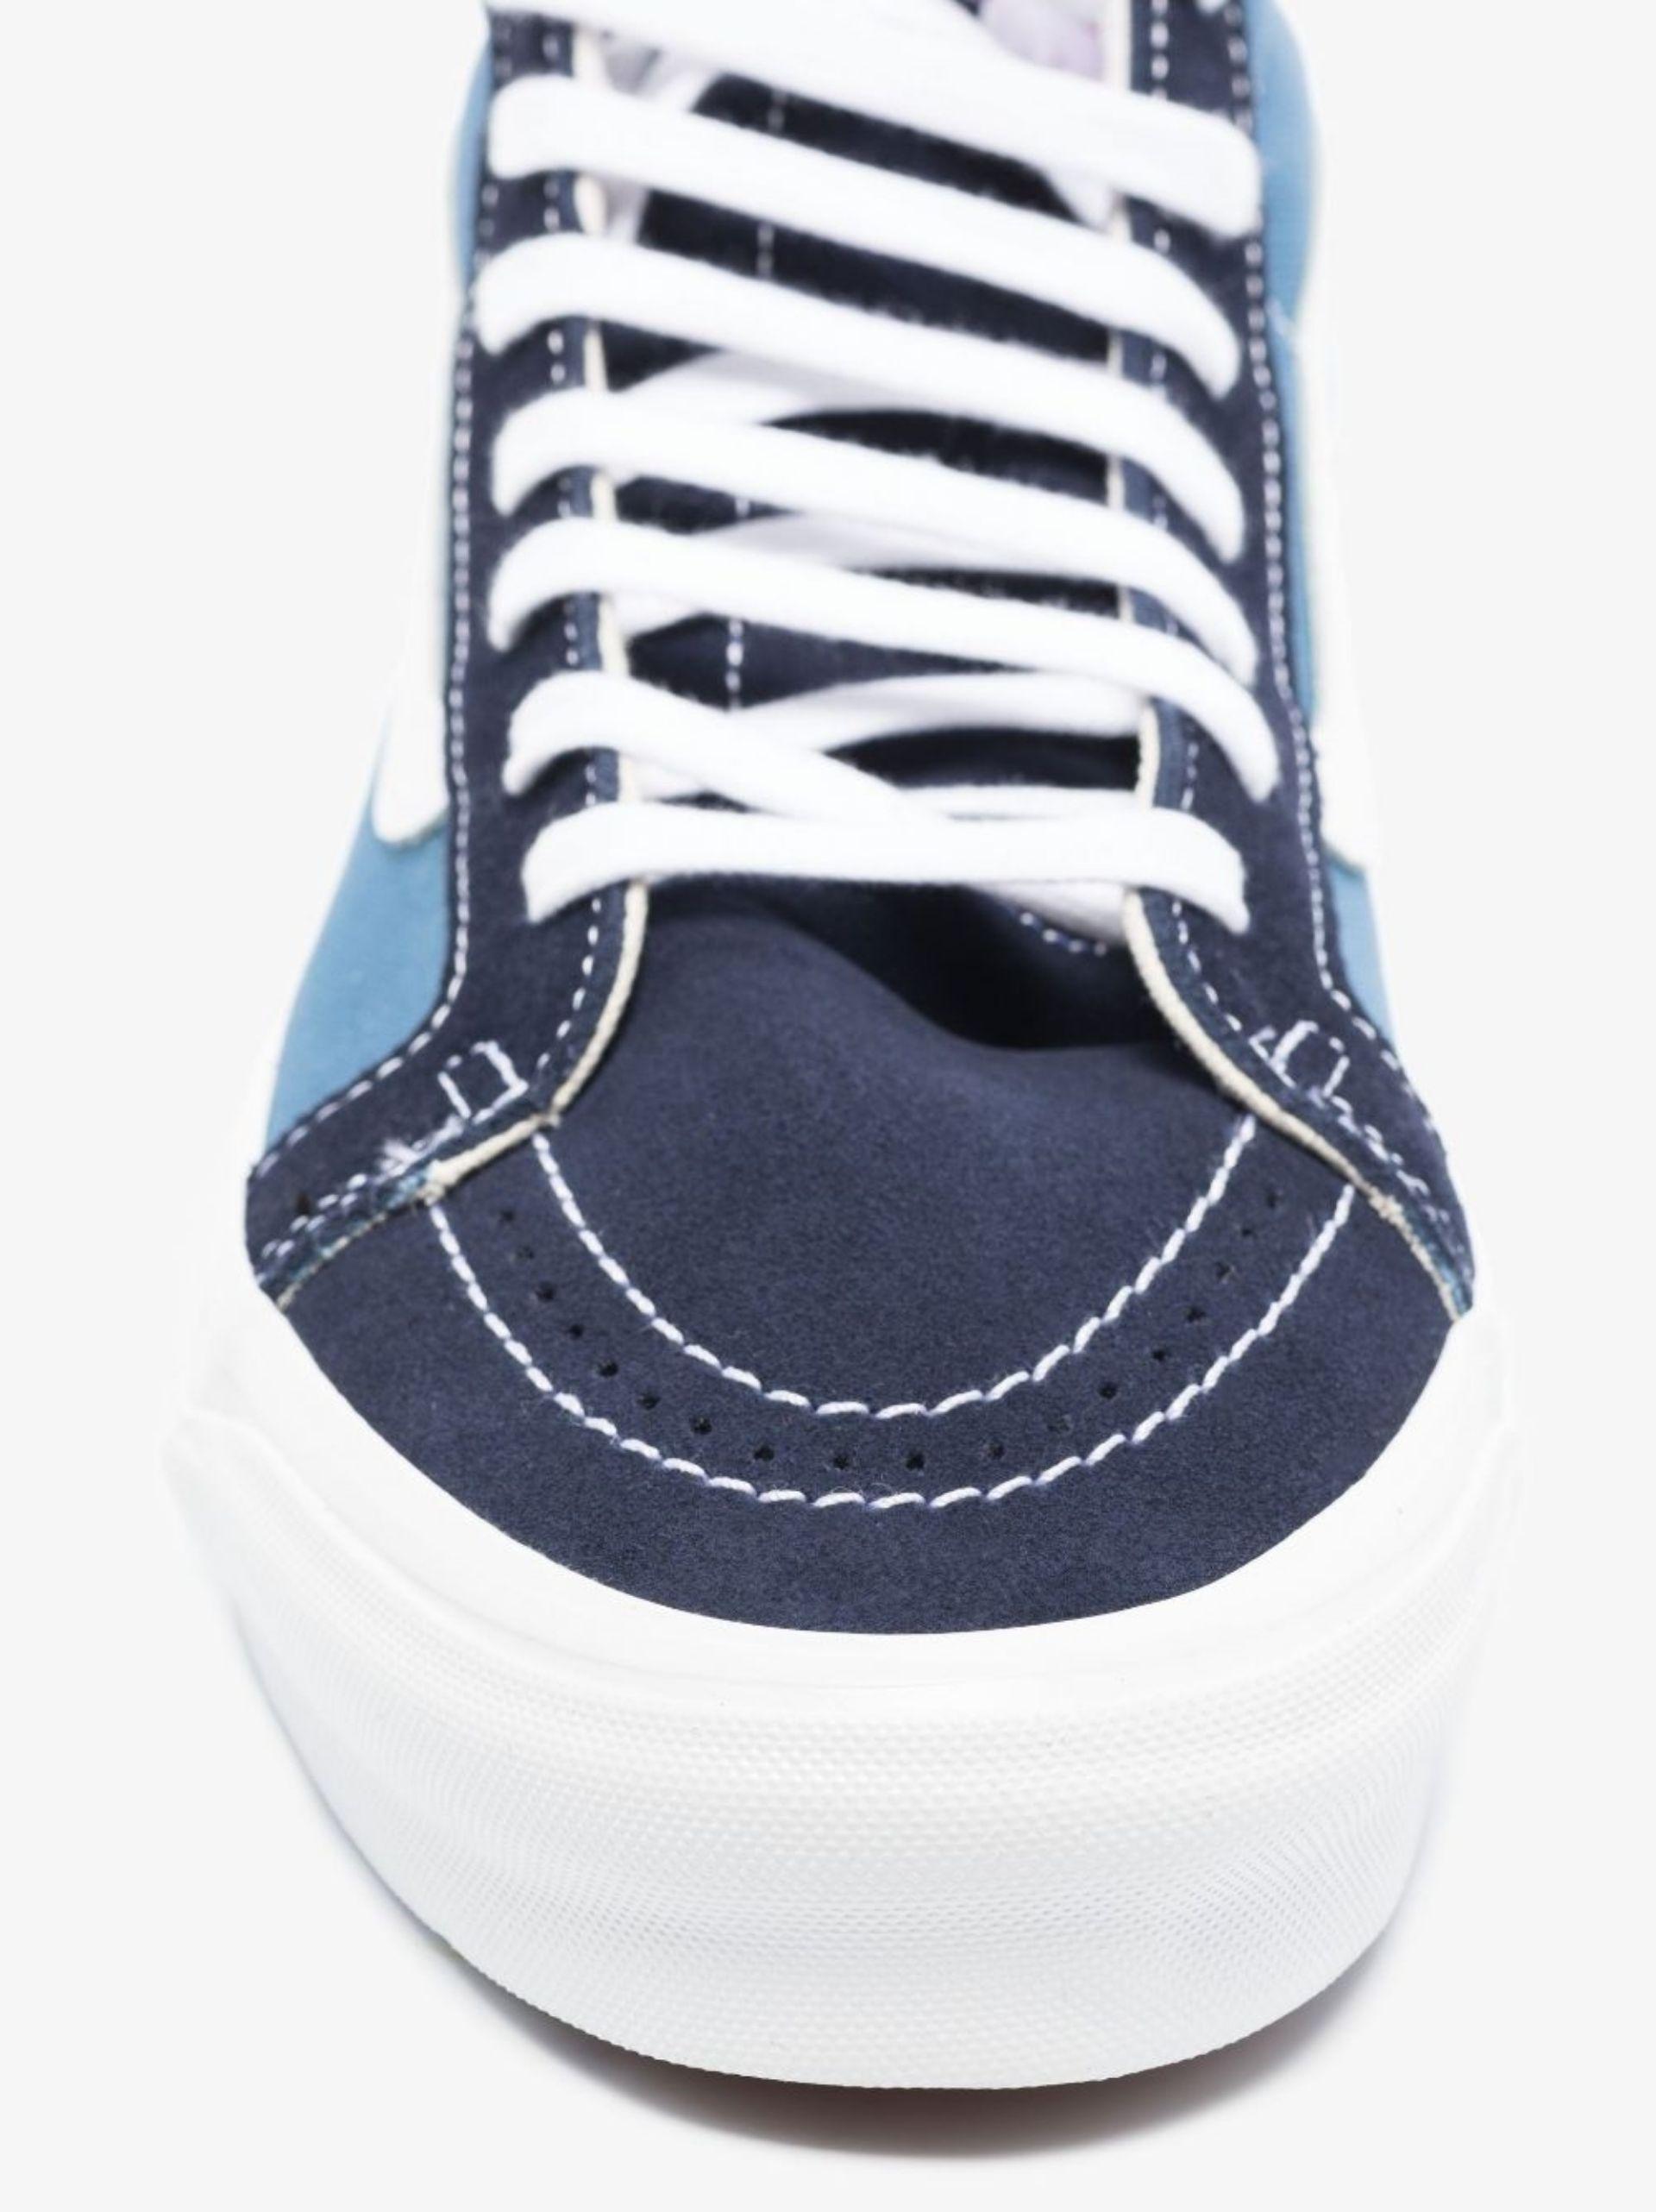 Vans Canvas Sk8 Hi - Shoes in Navy (Blue) for Men - Save 65% | Lyst